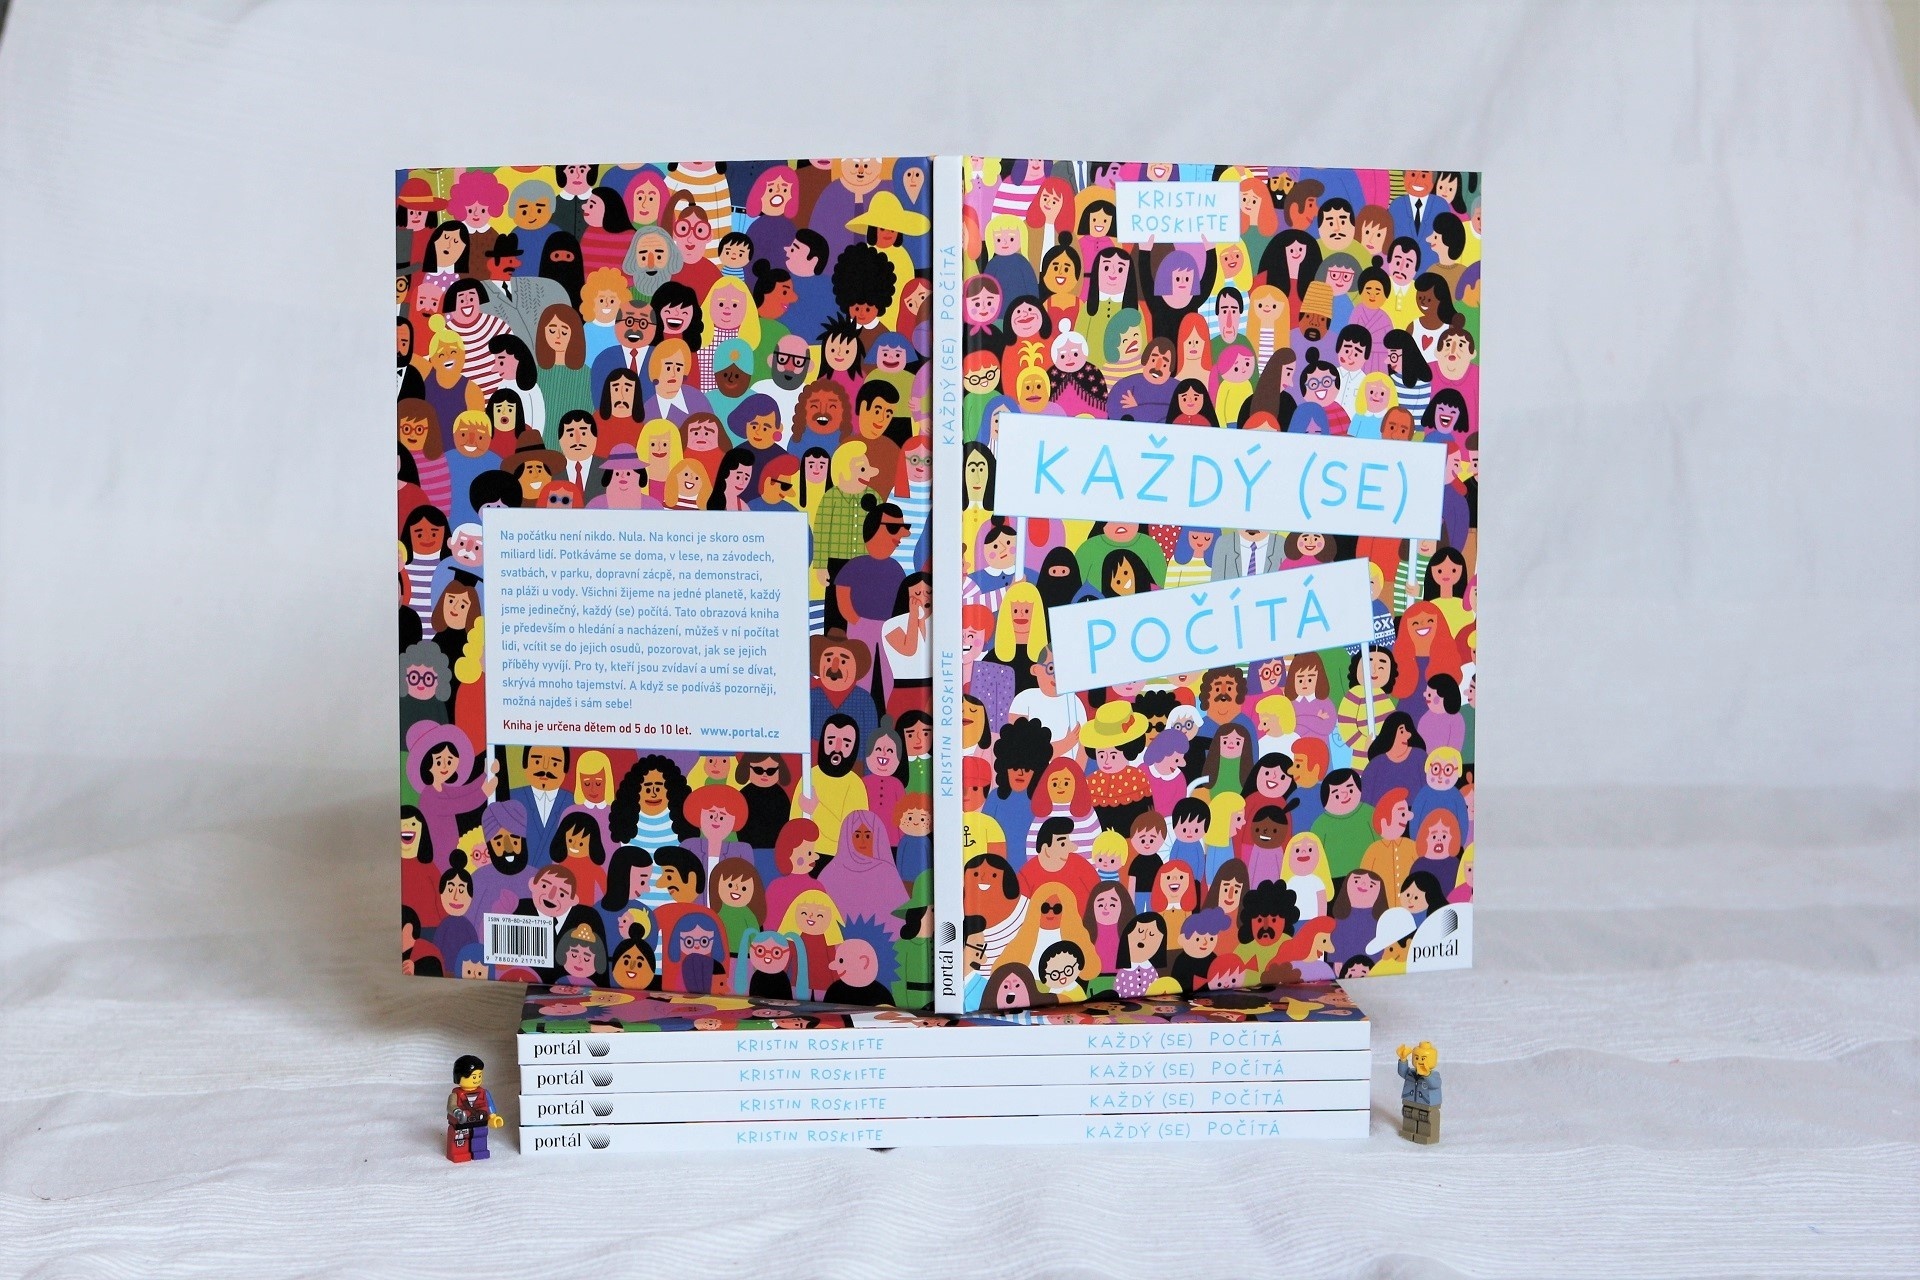 Kristin Roskifte, Každý (se) počítá, velkoformátová kniha, sociální čtení, ilustrace, tip na dárek pro děti